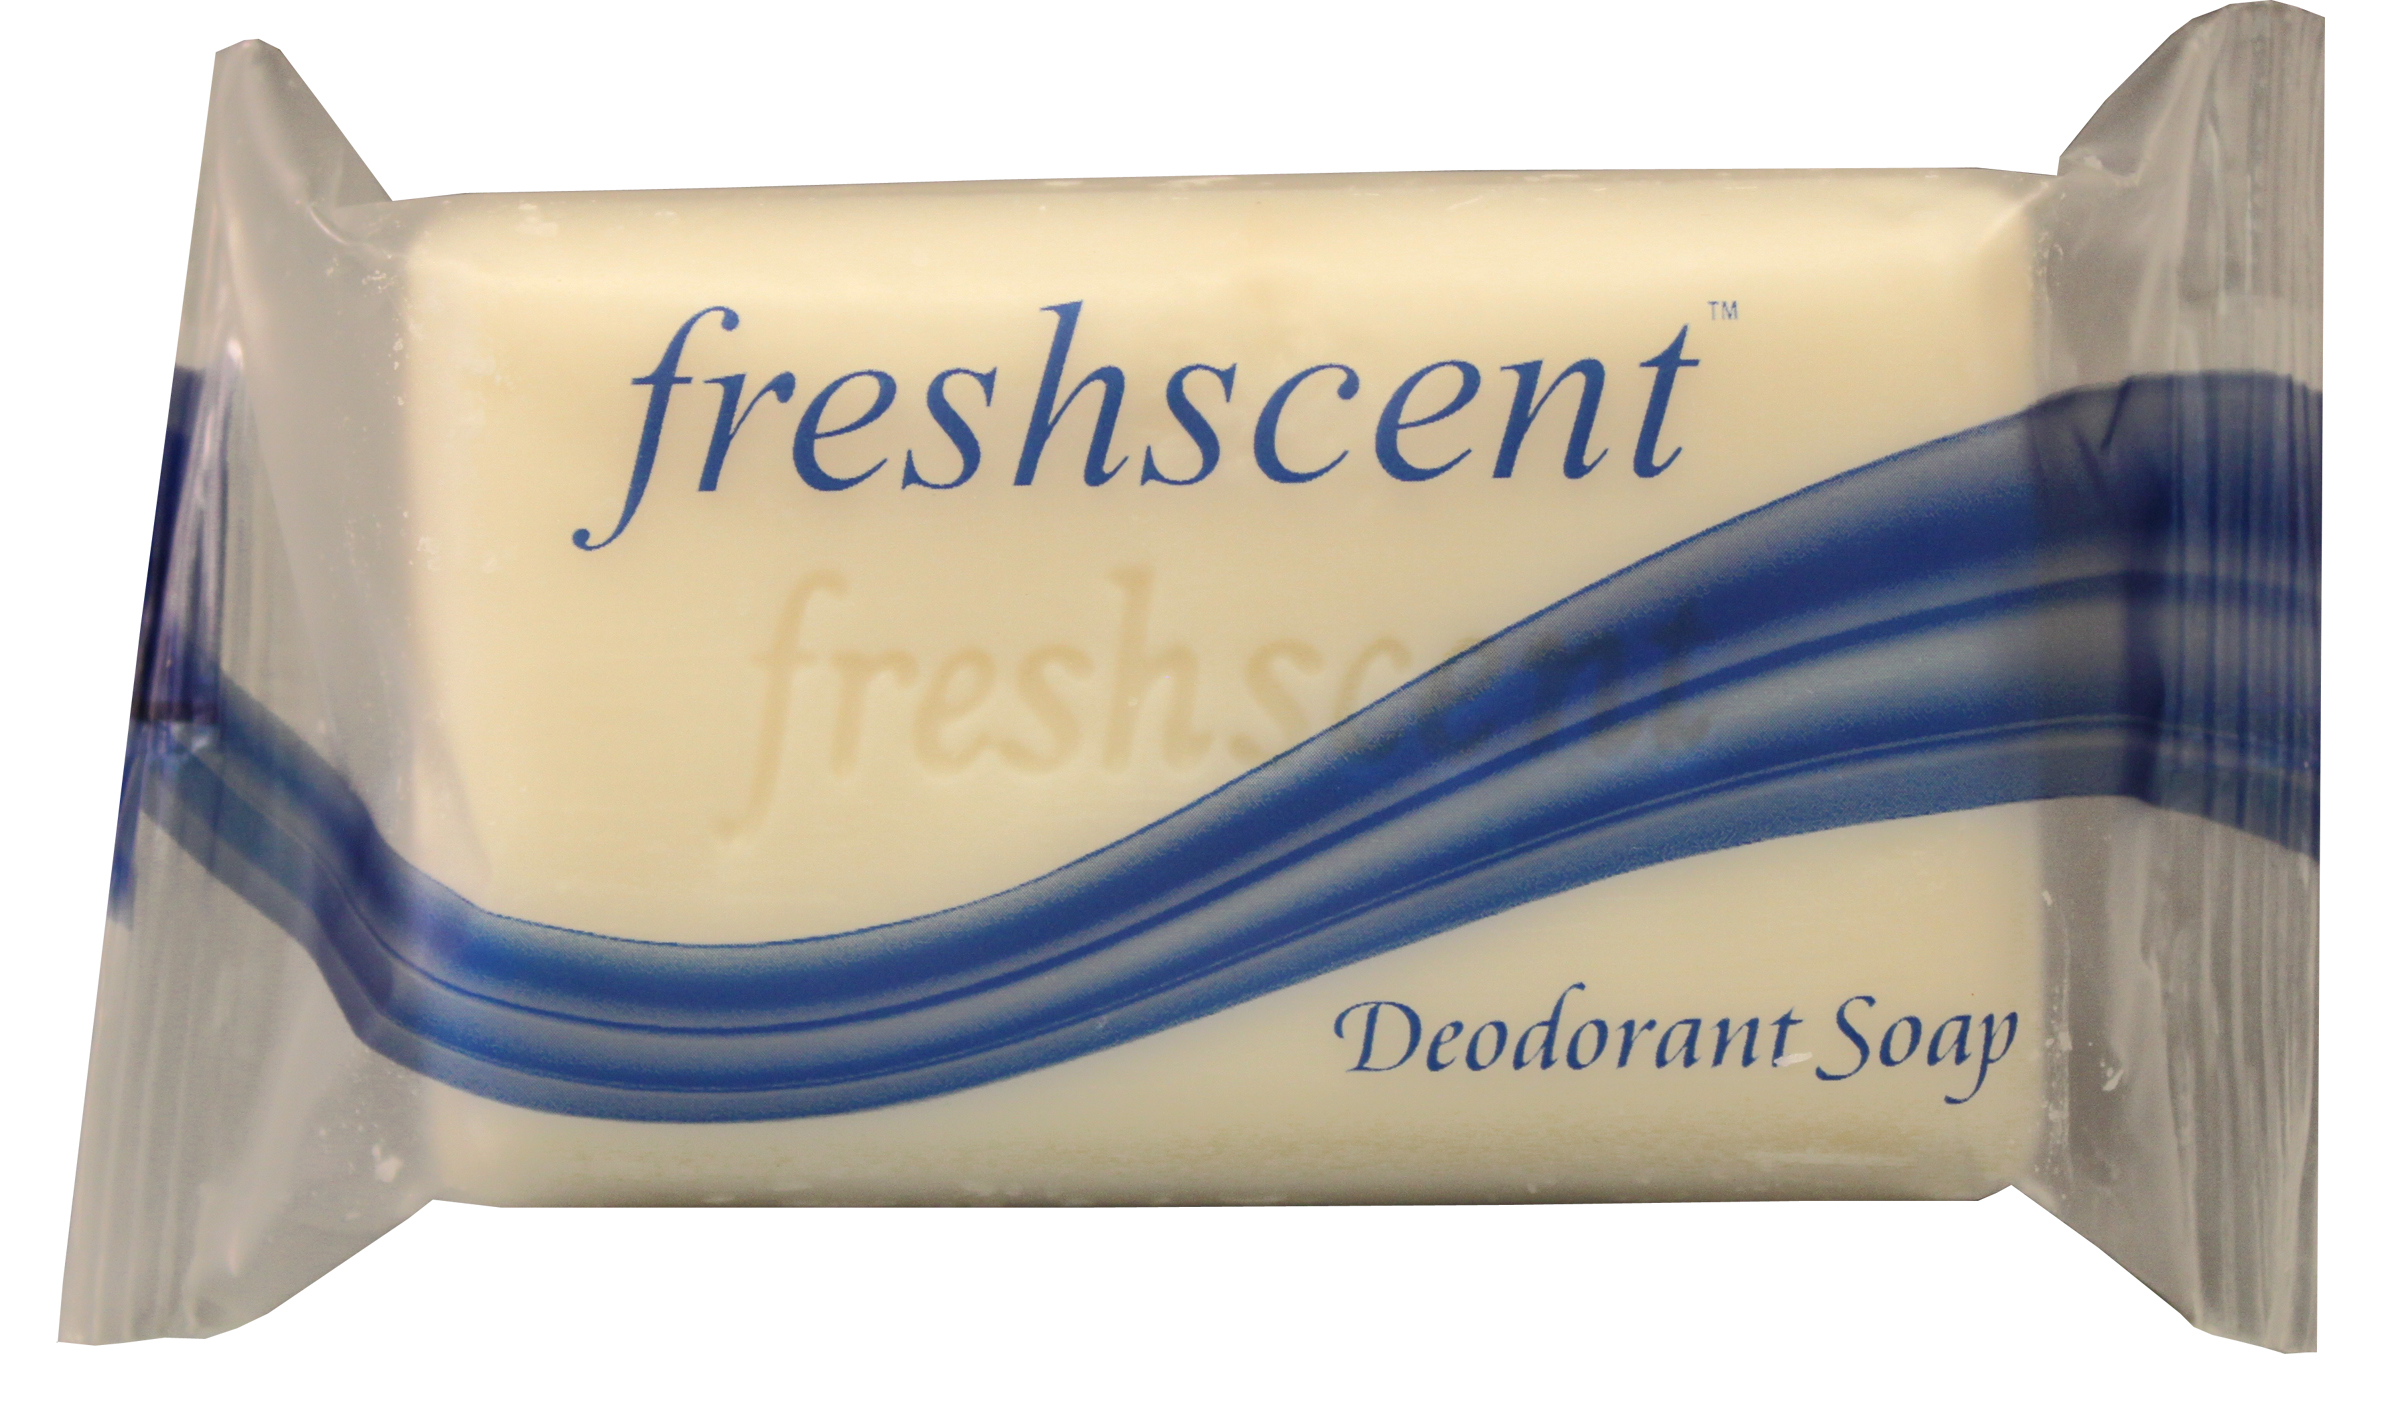 Freshscent #5 (4.5 oz.) Deodorant Soap